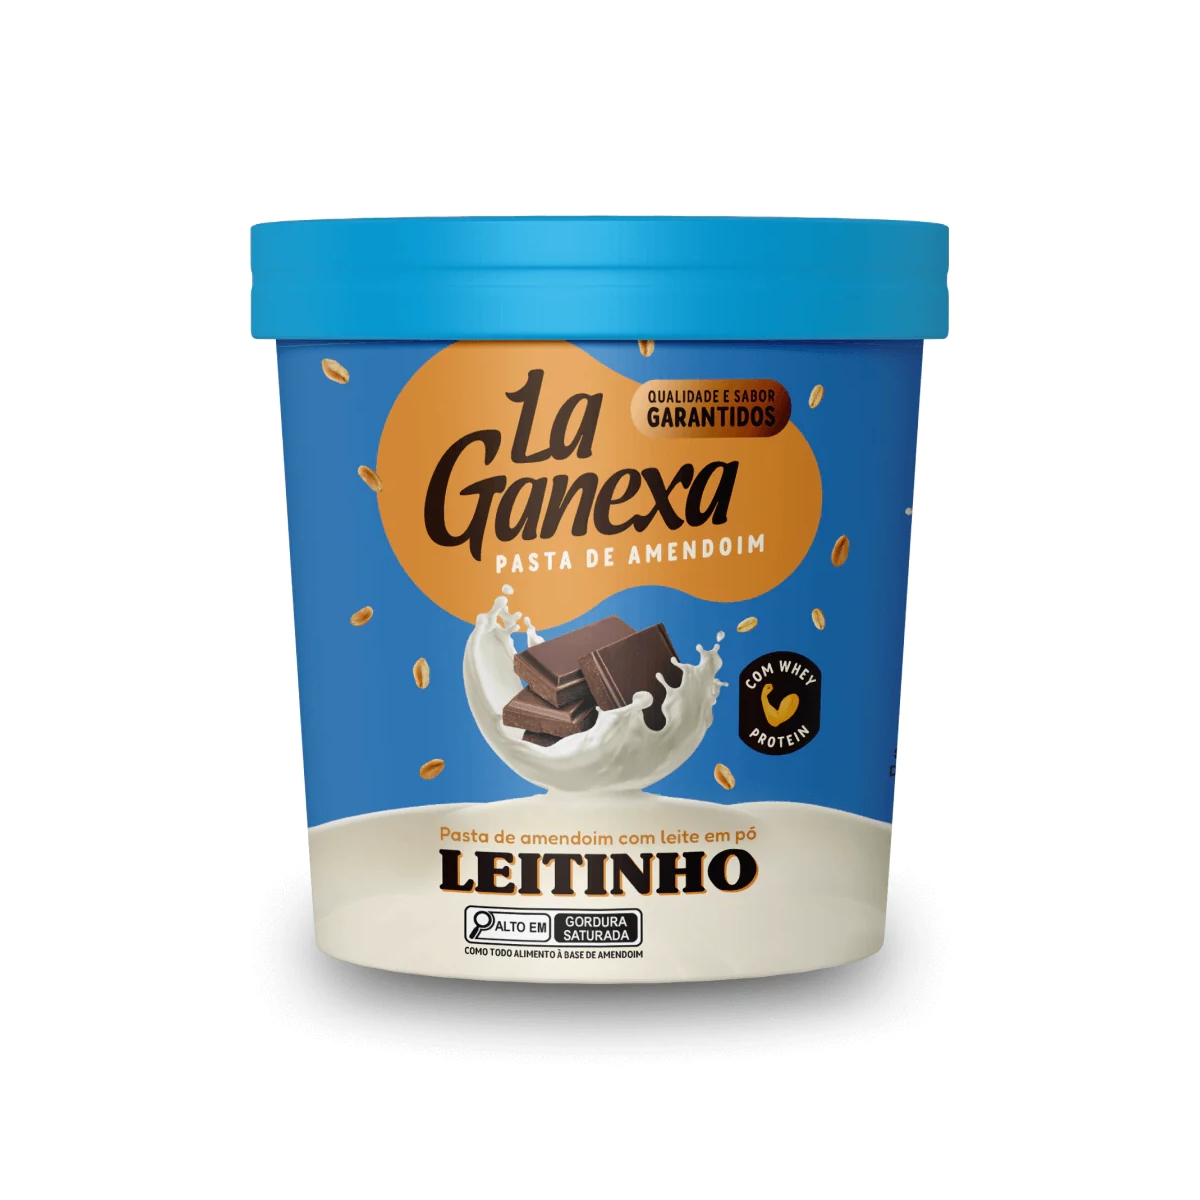 Pasta de Amendoim (450g) - Leitinho La Ganexa - La Ganexa